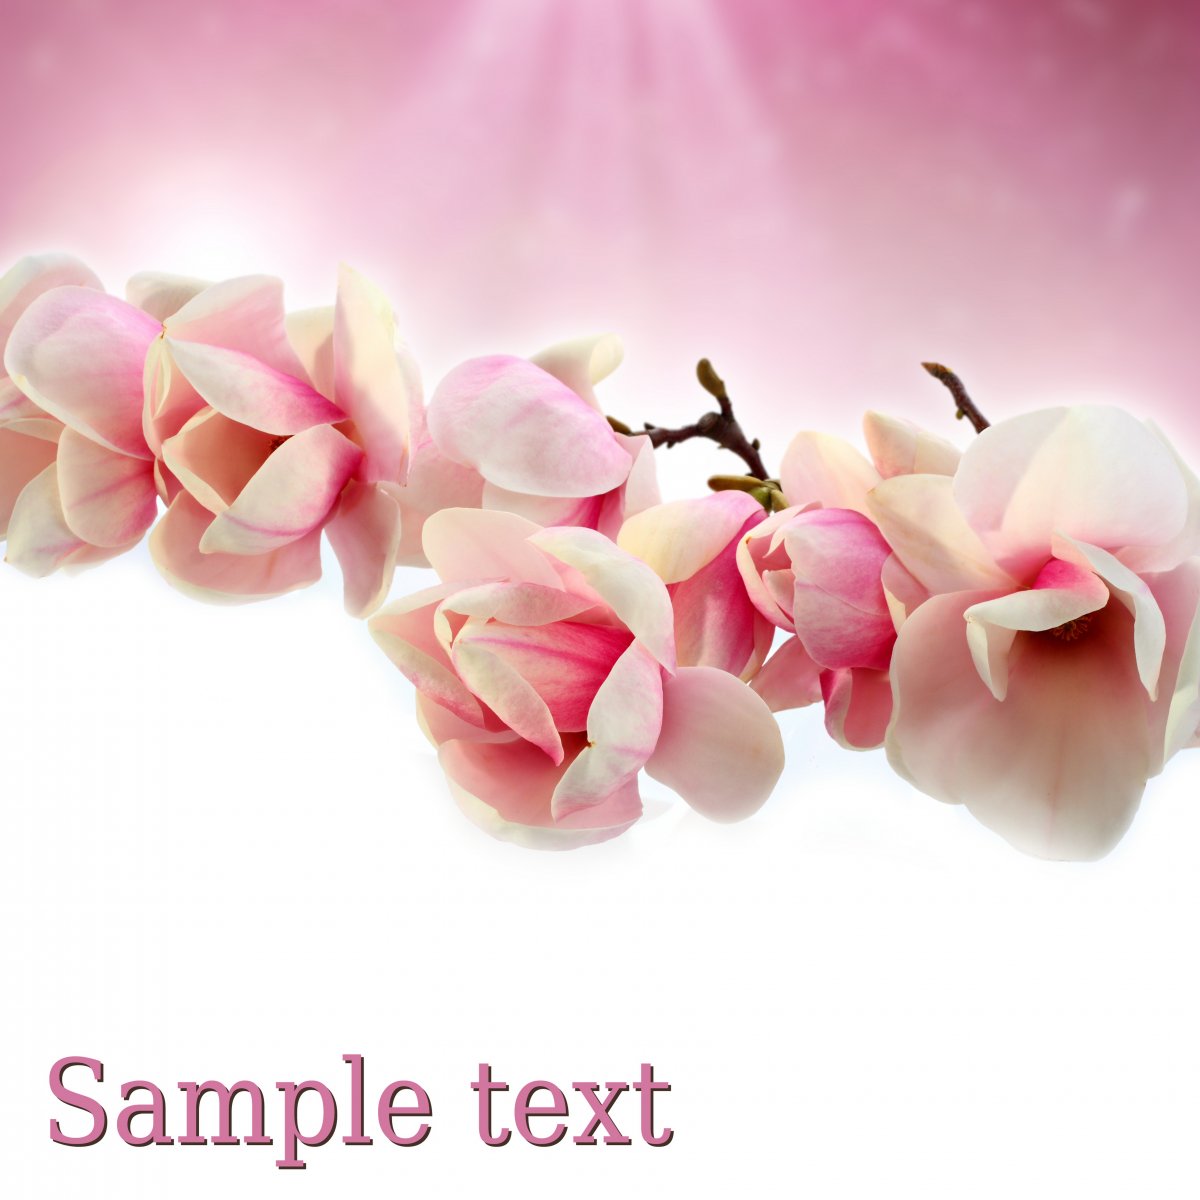 Elegant magnolia pictures